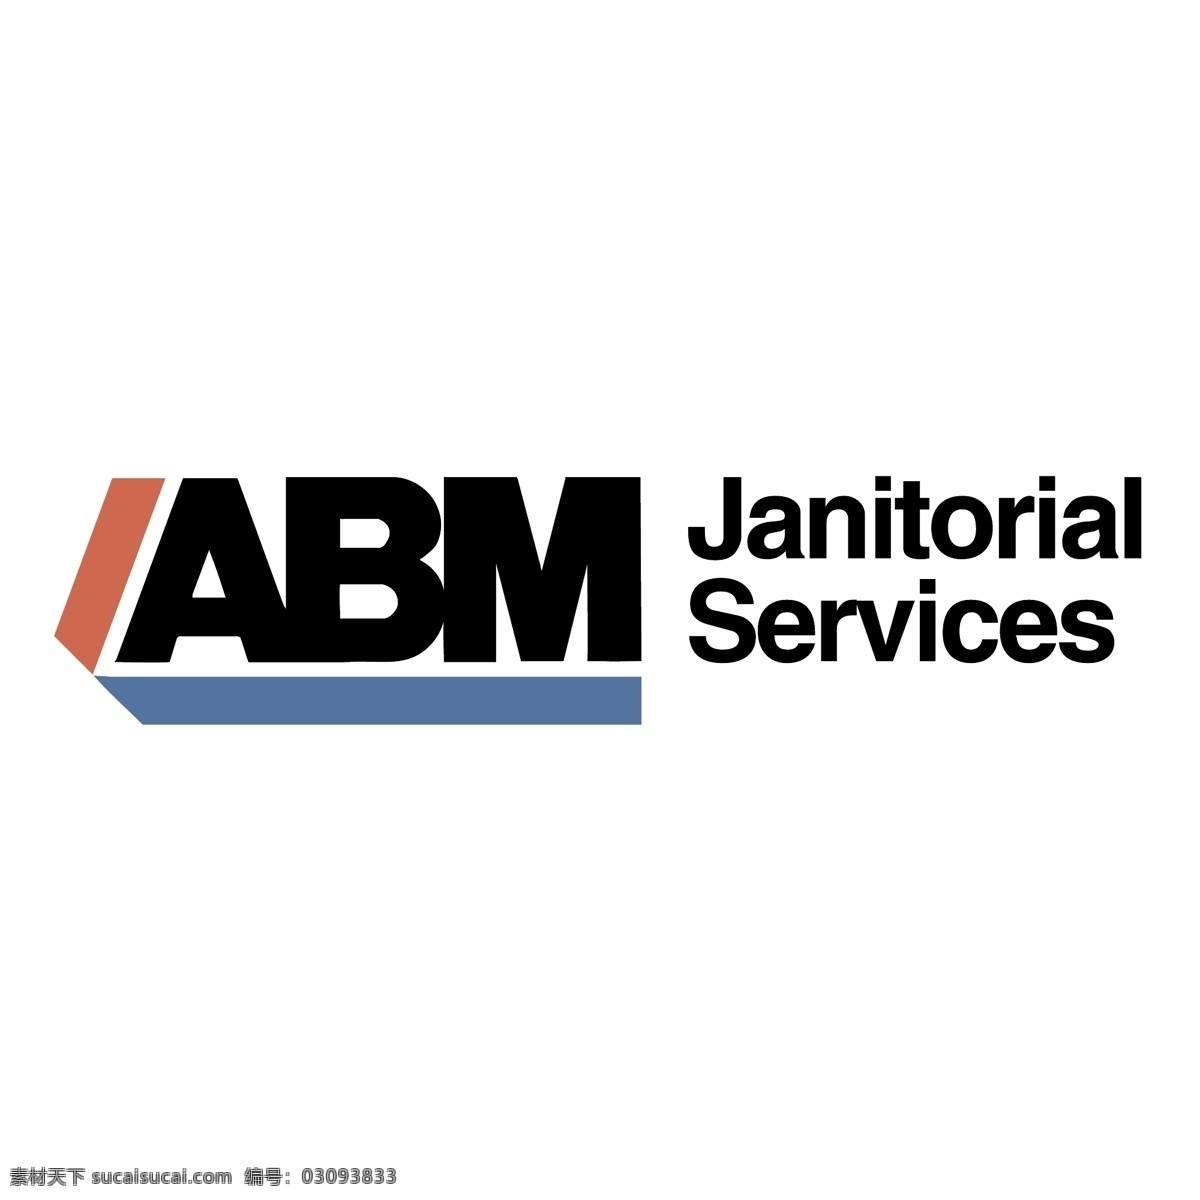 abm 清洁服务 标识 公司 免费 品牌 品牌标识 商标 矢量标志下载 免费矢量标识 矢量 psd源文件 logo设计